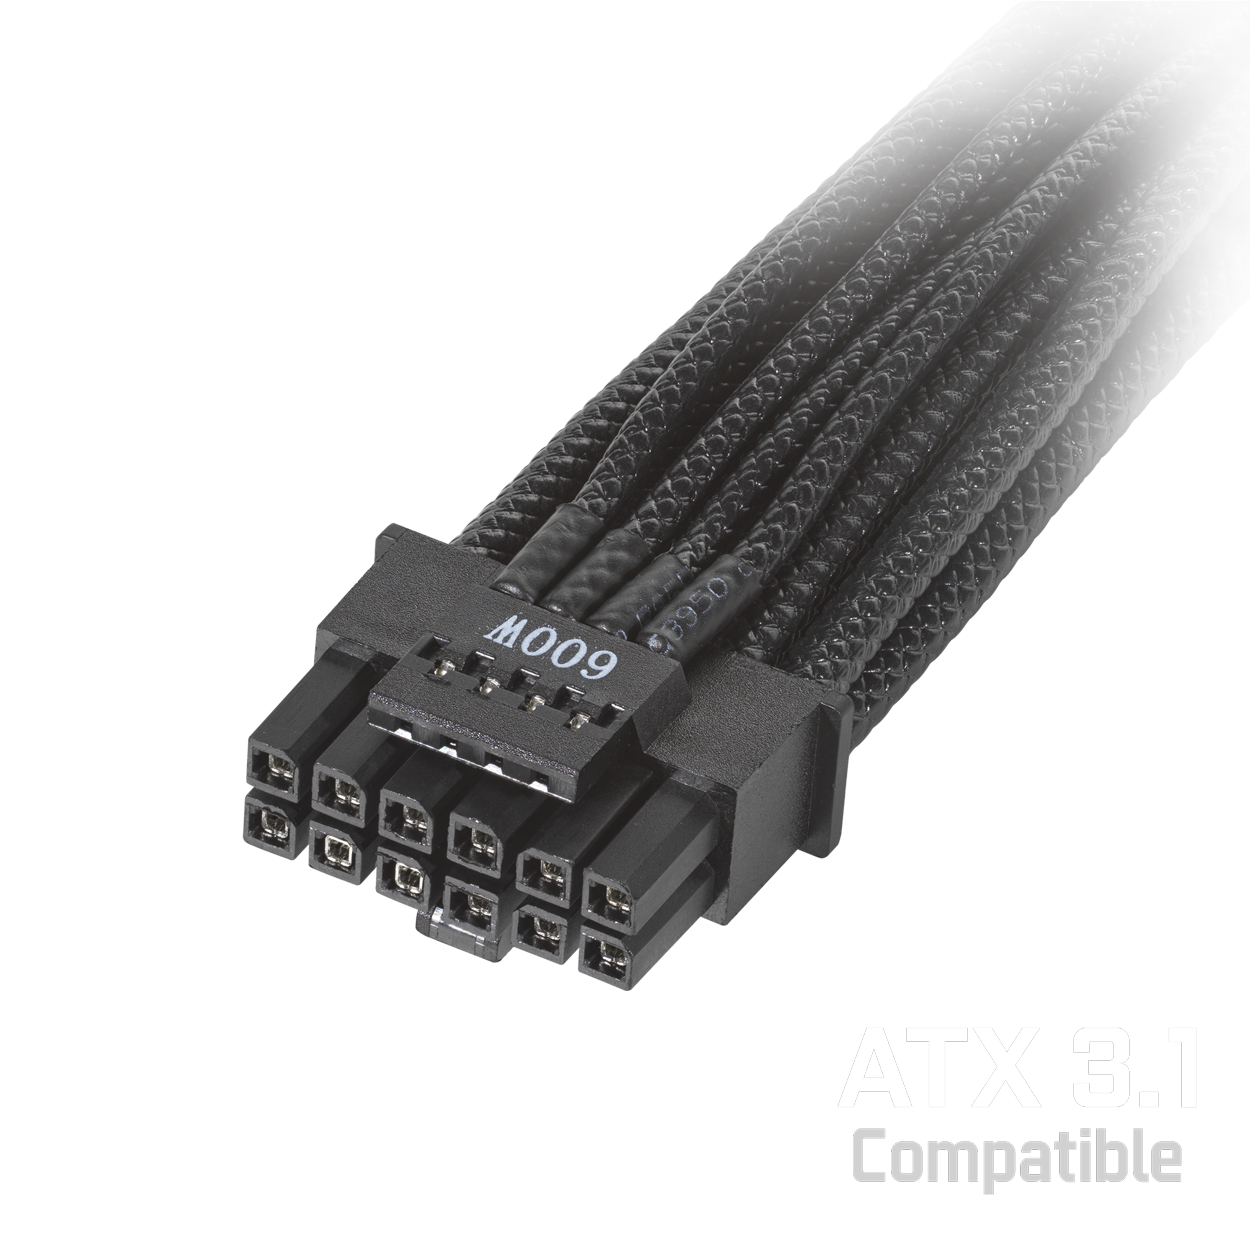 Câble d'alimentation PCIe 5.0 600W avec logo compatible ATX 3.1